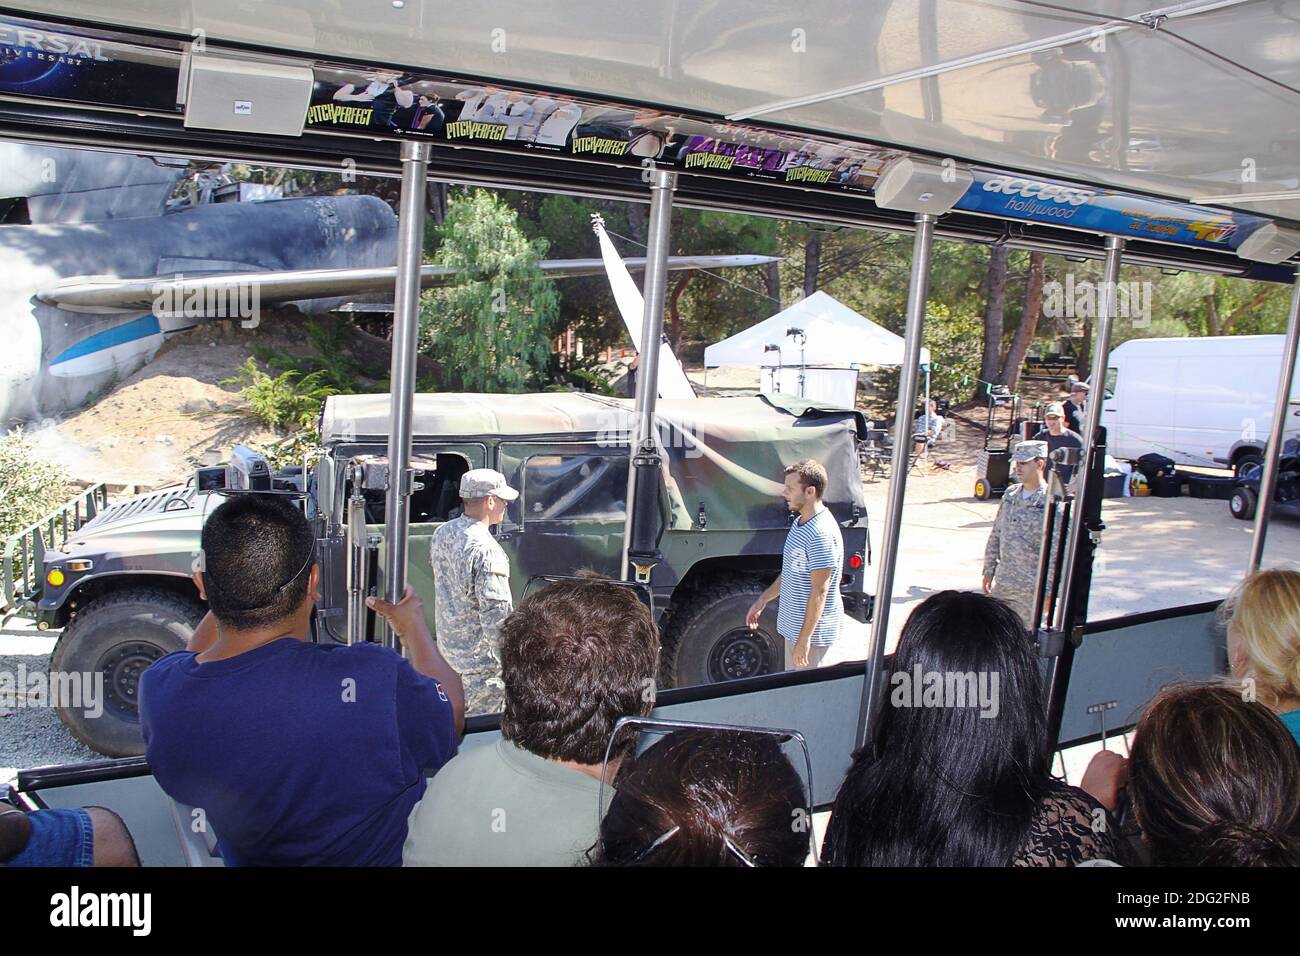 Groupe de personnes sur la visite de studio appelé visite de Backlot. Attraction à bord du parc à thème Universal Studios Hollywood à Universal City, Californie, L.A. Banque D'Images